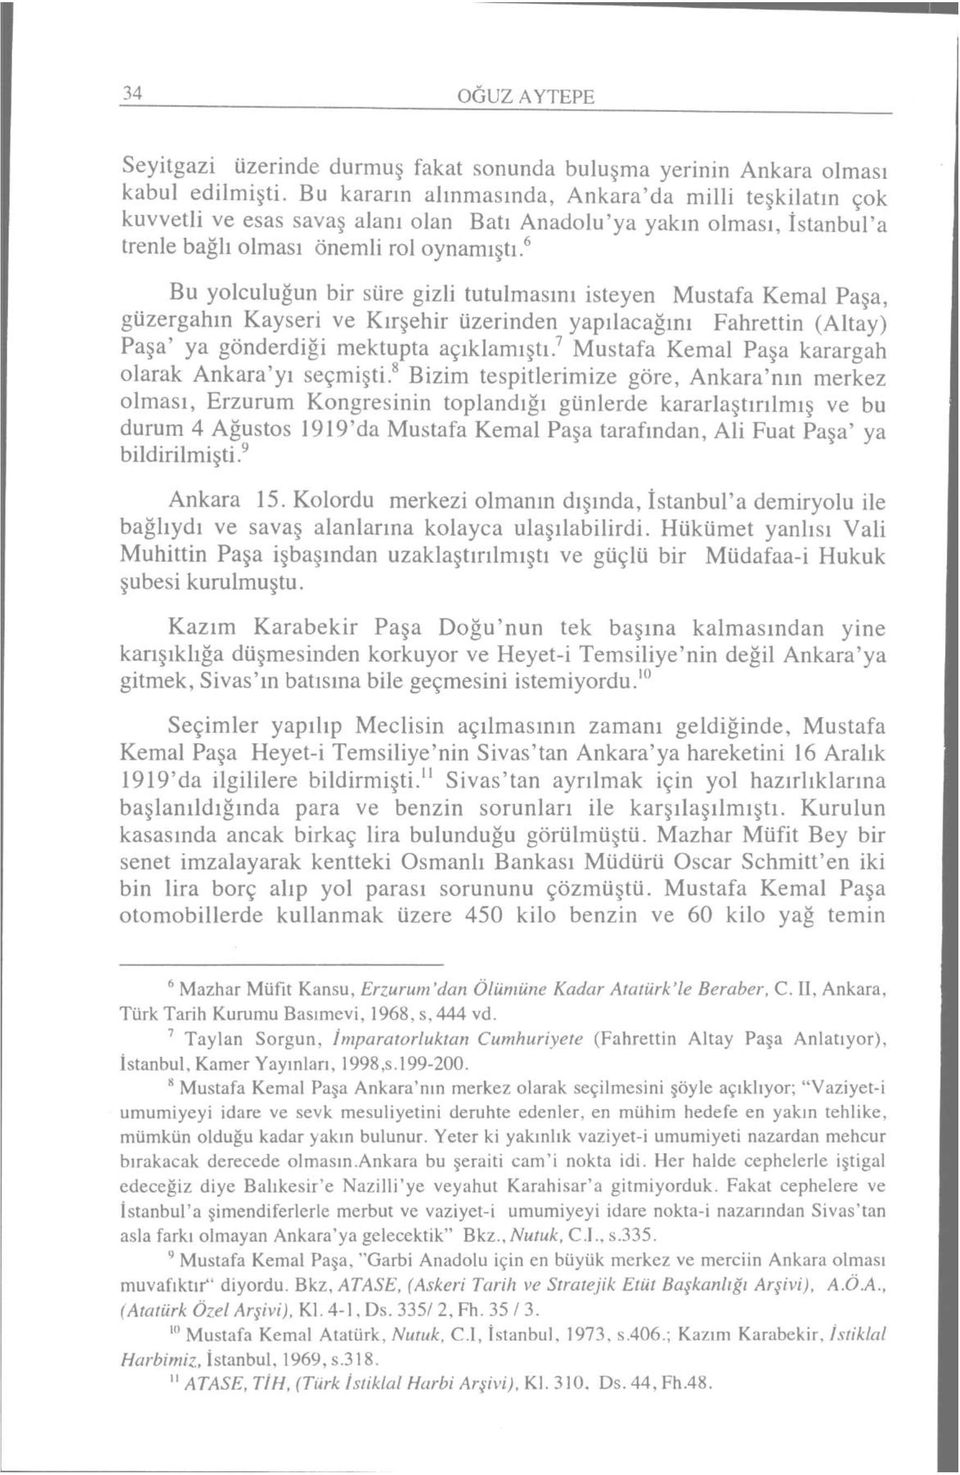 6 Bu yolculuğun bir süre gizli tutulmasını isteyen Mustafa Kemal Paşa, güzergahın Kayseri ve Kırşehir üzerinden yapılacağını Fahrettin (Altay) Paşa' ya gönderdiği mektupta açıklamıştı.